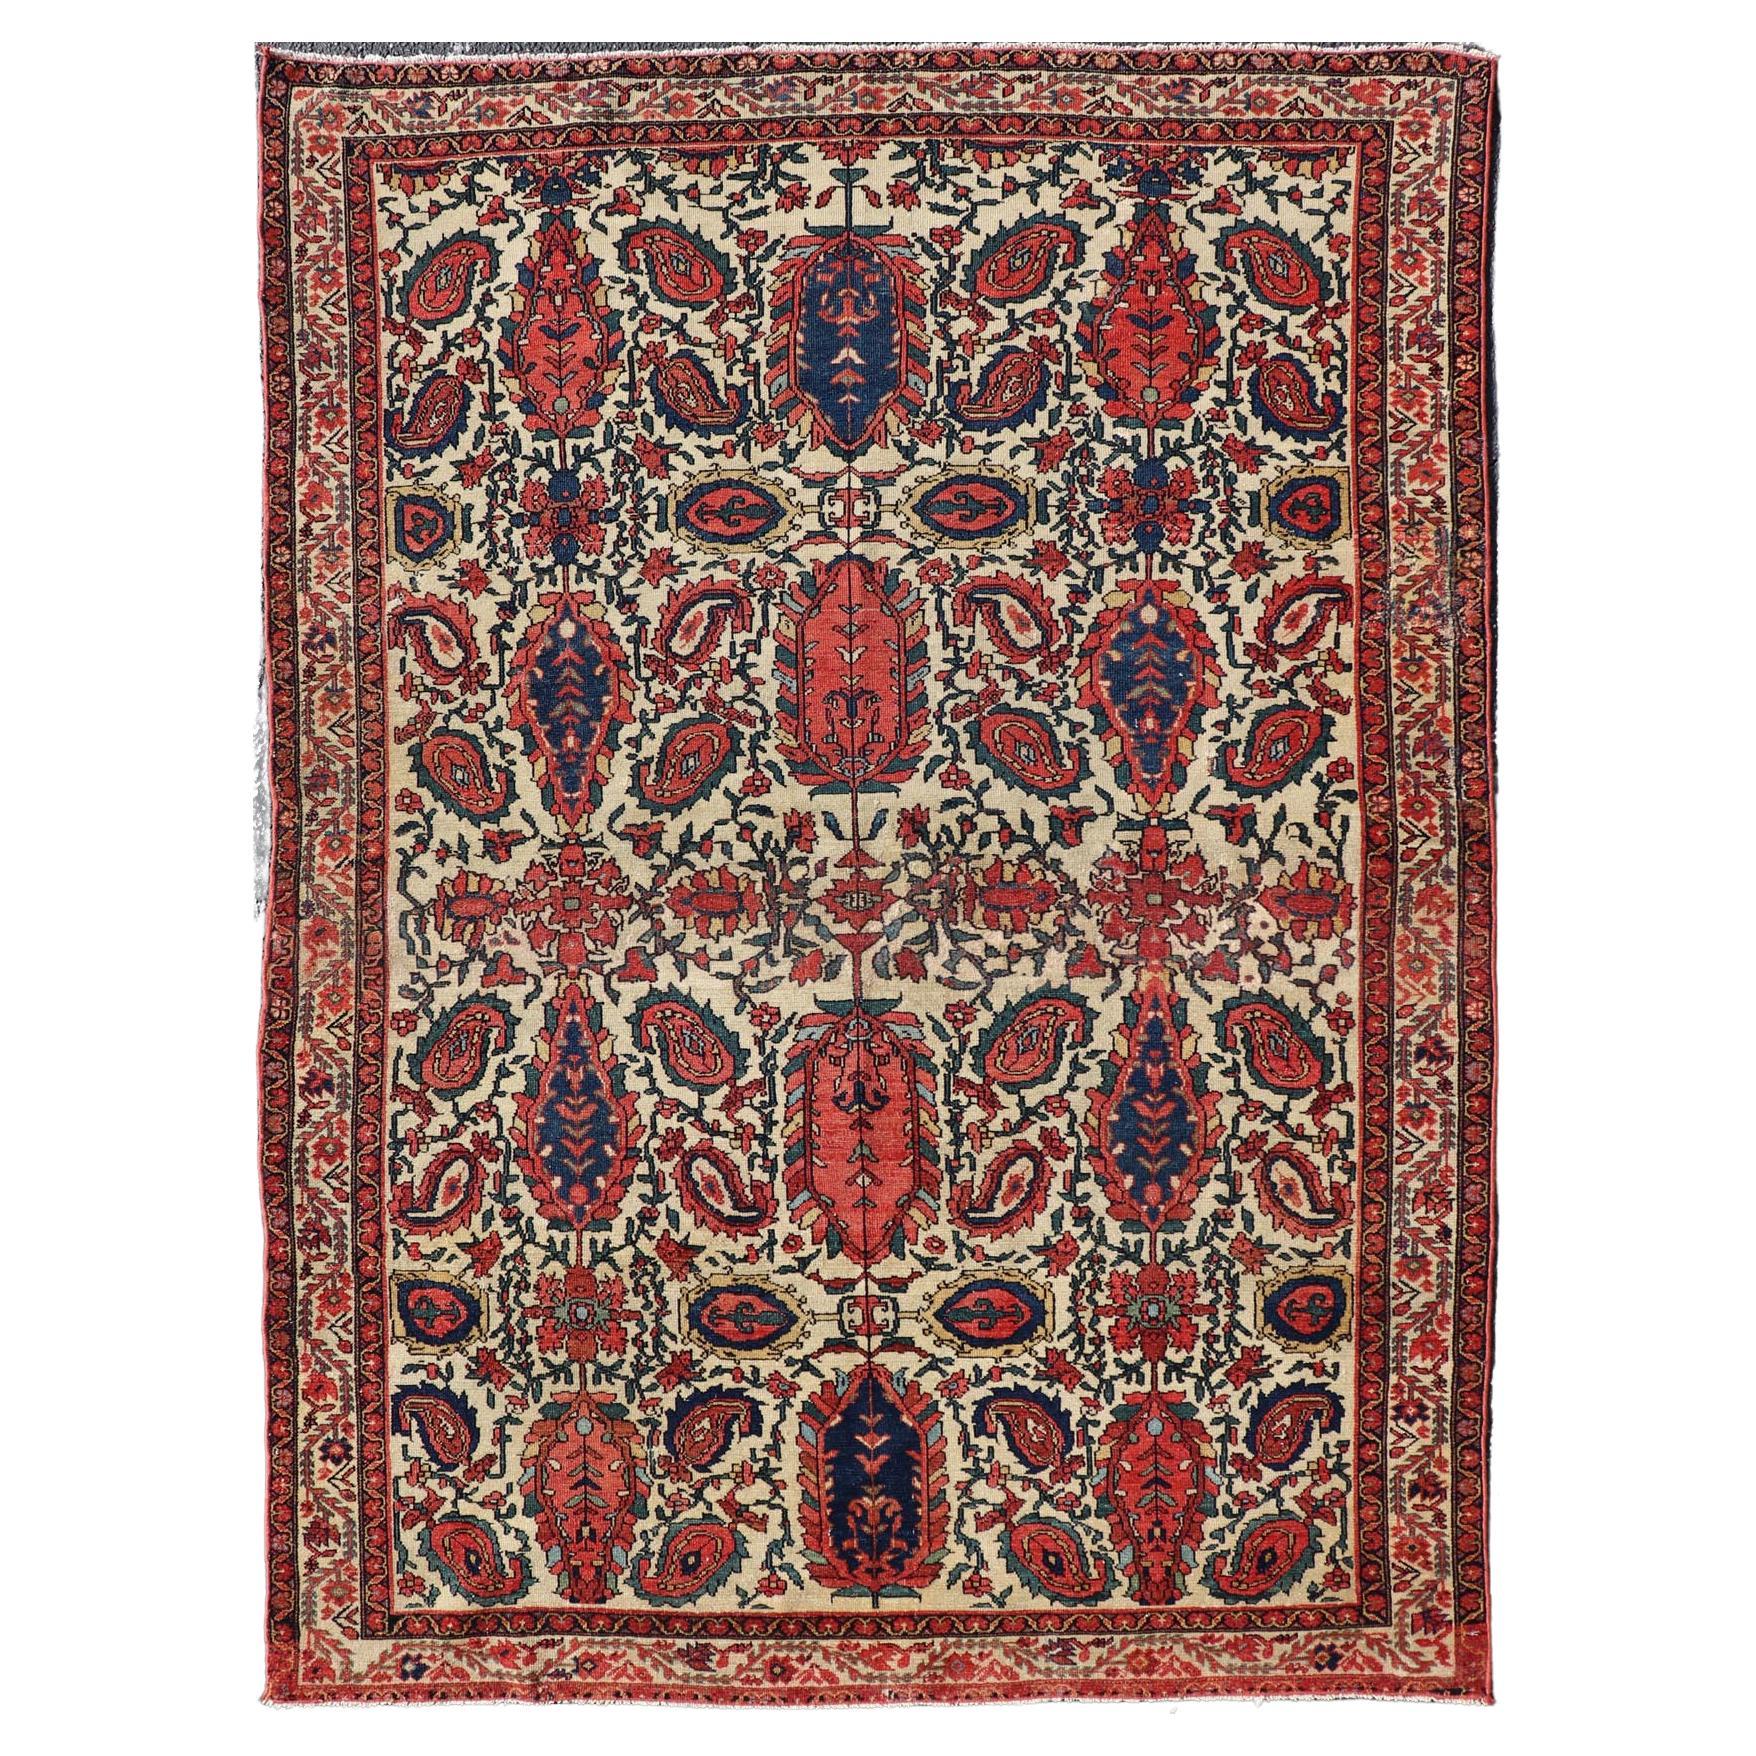 Antiker persischer feiner Sanneh Malayer-Teppich mit All-Over-Design in Elfenbein, Rot, Blau